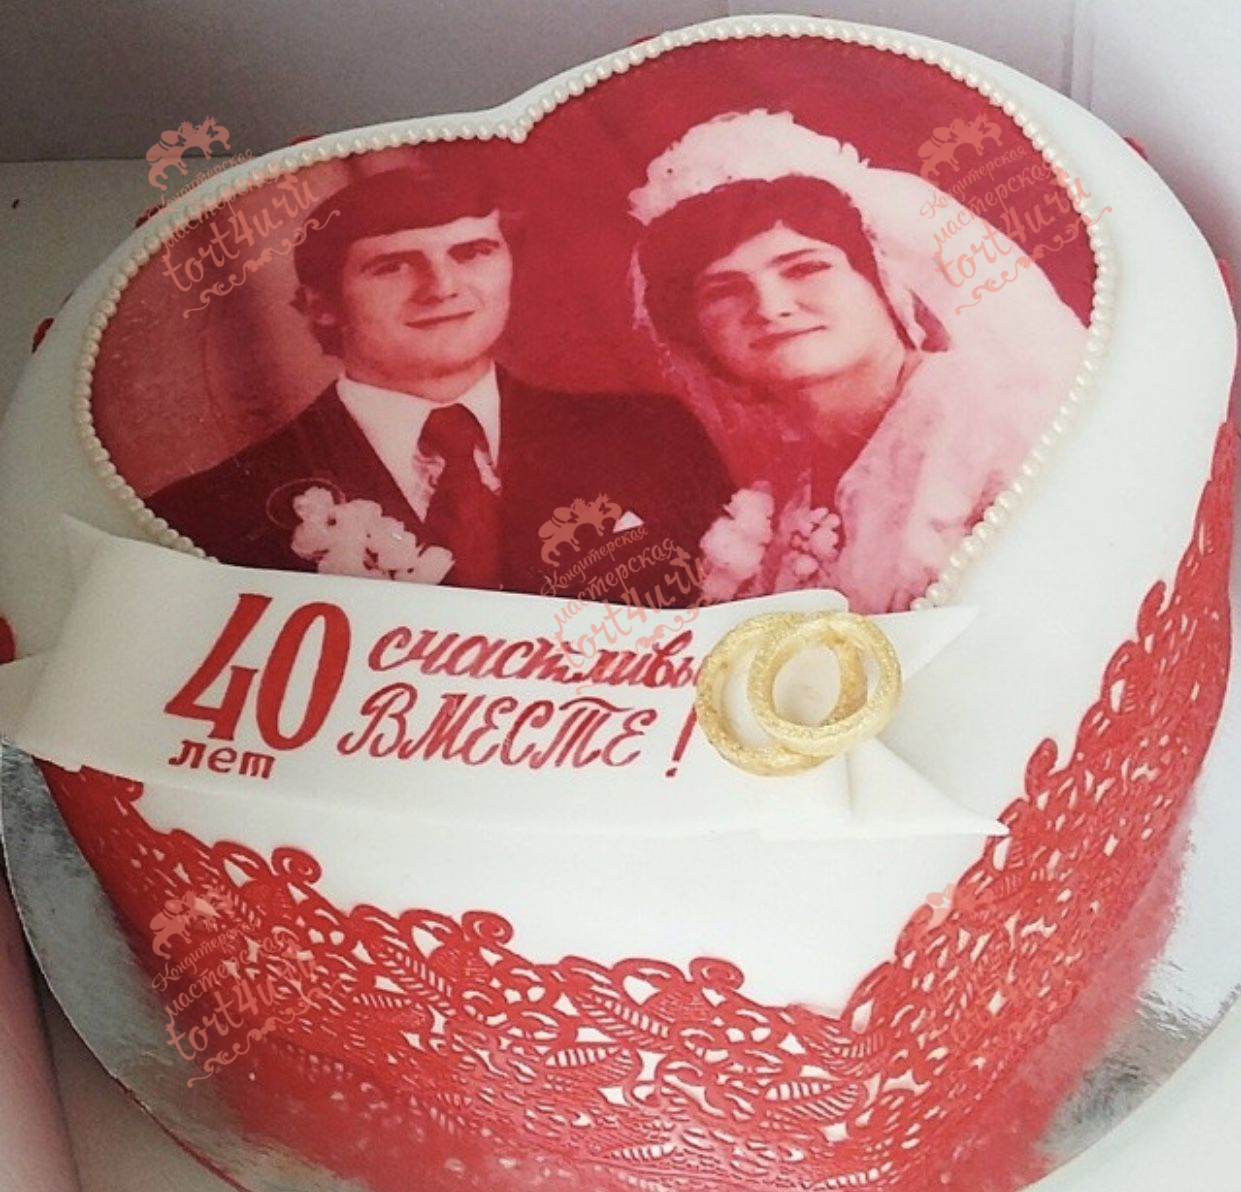 Можно на 40 лет дарить. Торт на рябиновую свадьбу. Торт на рубиновую свадьбу. Торт на рубиновую свадьбу родителям. Тортик на рубиновую свадьбу.